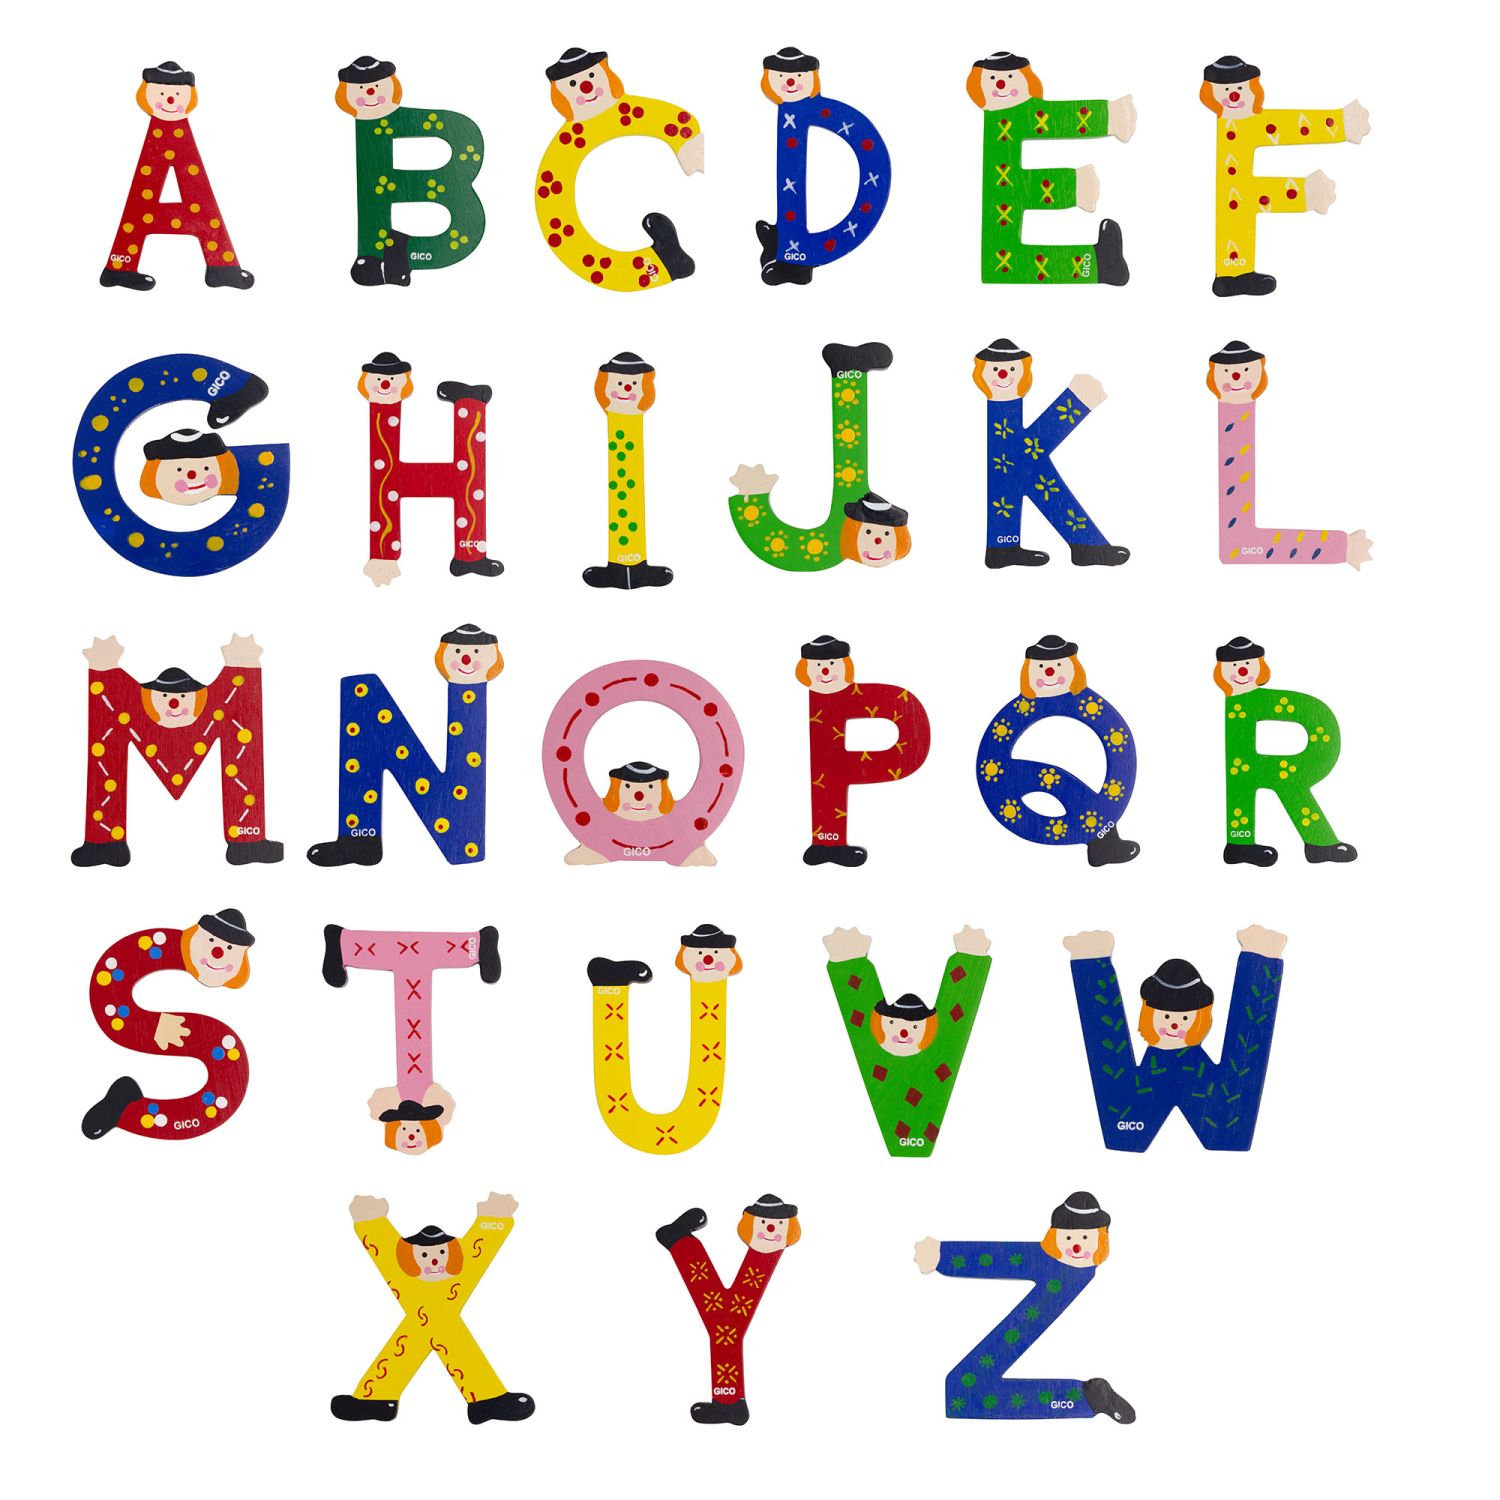 Clown Buchstaben aus Holz für das Kinderzimmer  A-Z 9 cm X